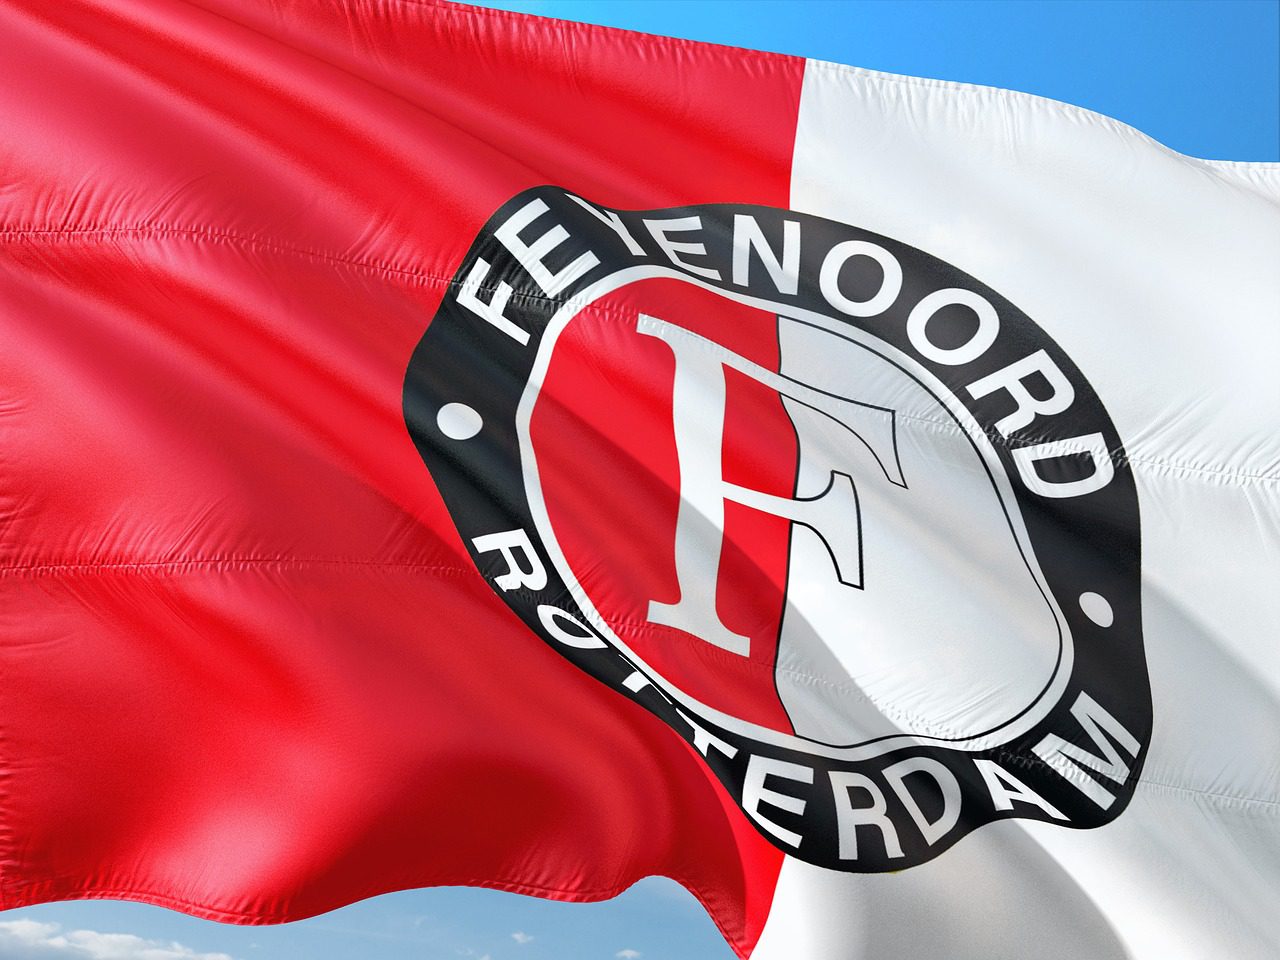 Laatste kans voor Feyenoord in Champions League